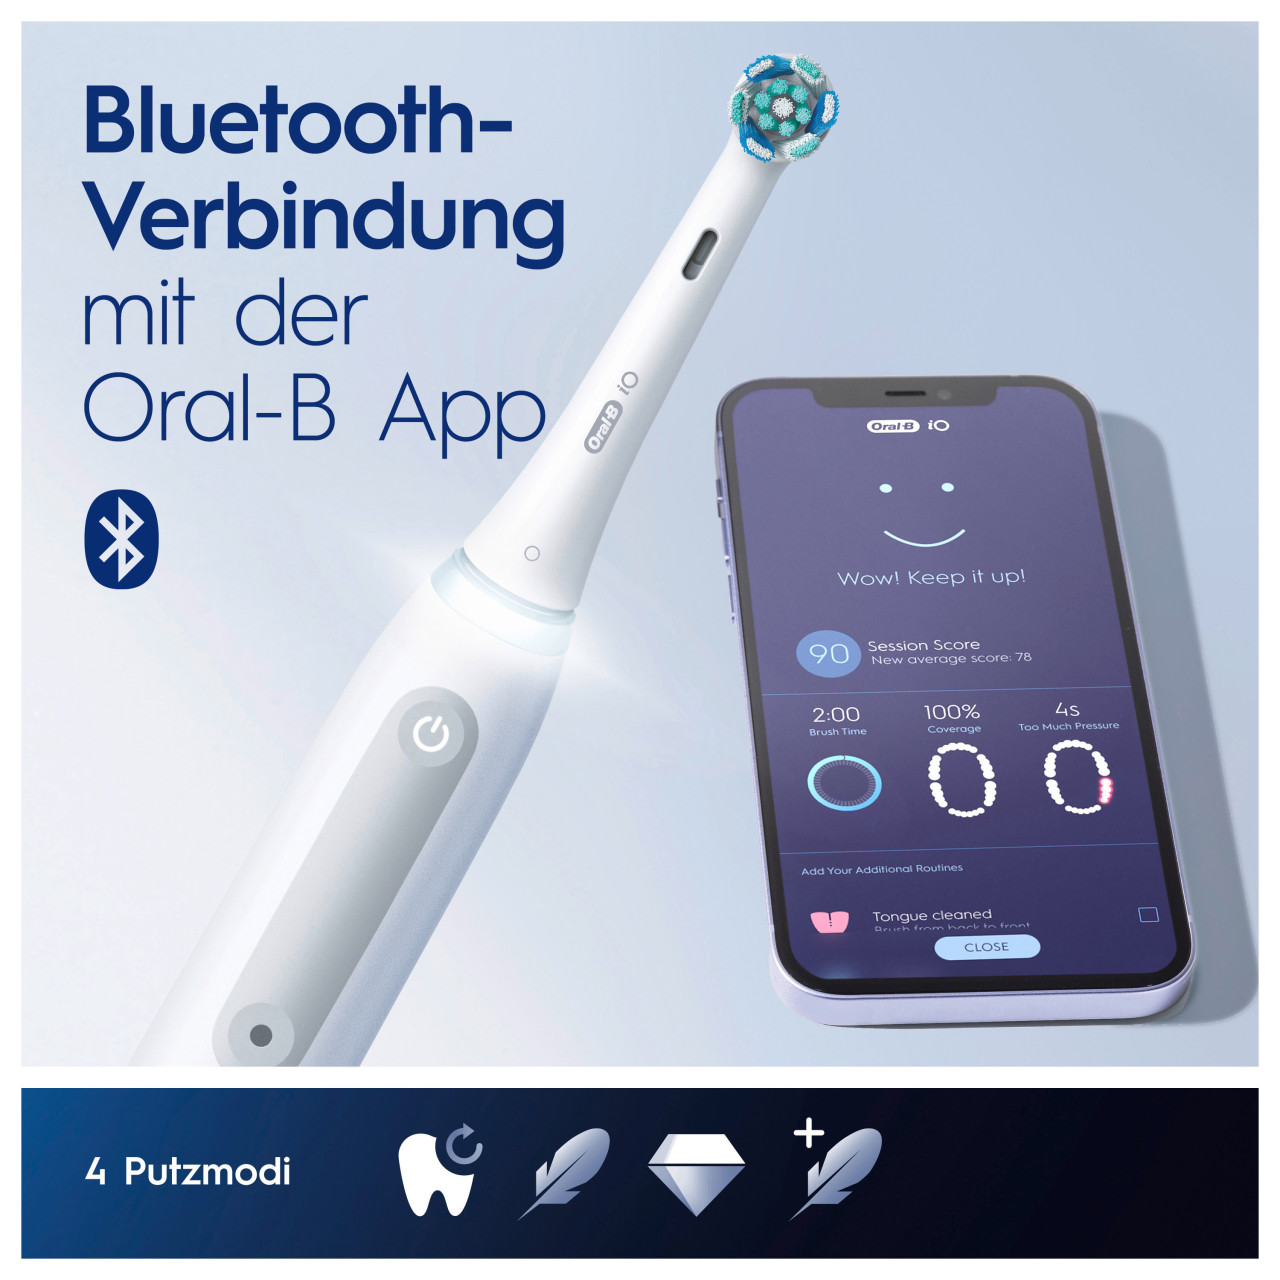 Ersatzteile, online iO4 kaufen Oral-B Braun | Munddusche Center Neugeräte - OxyJet Reinigungssystem Zubehör, +